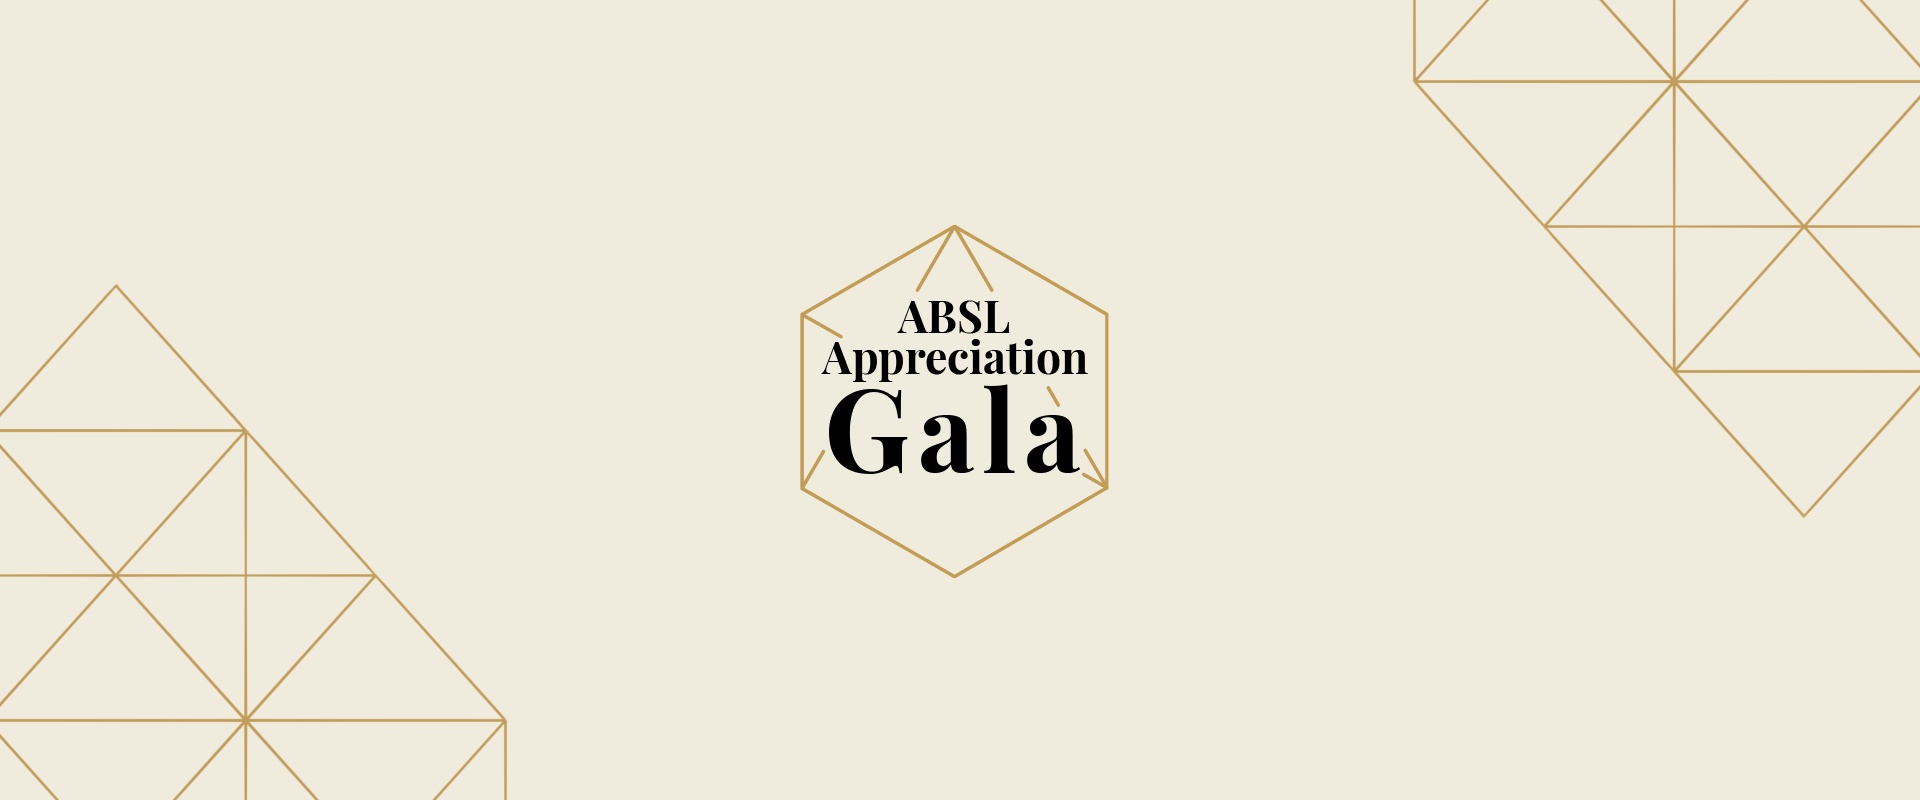 ABSL Appreciation Gala